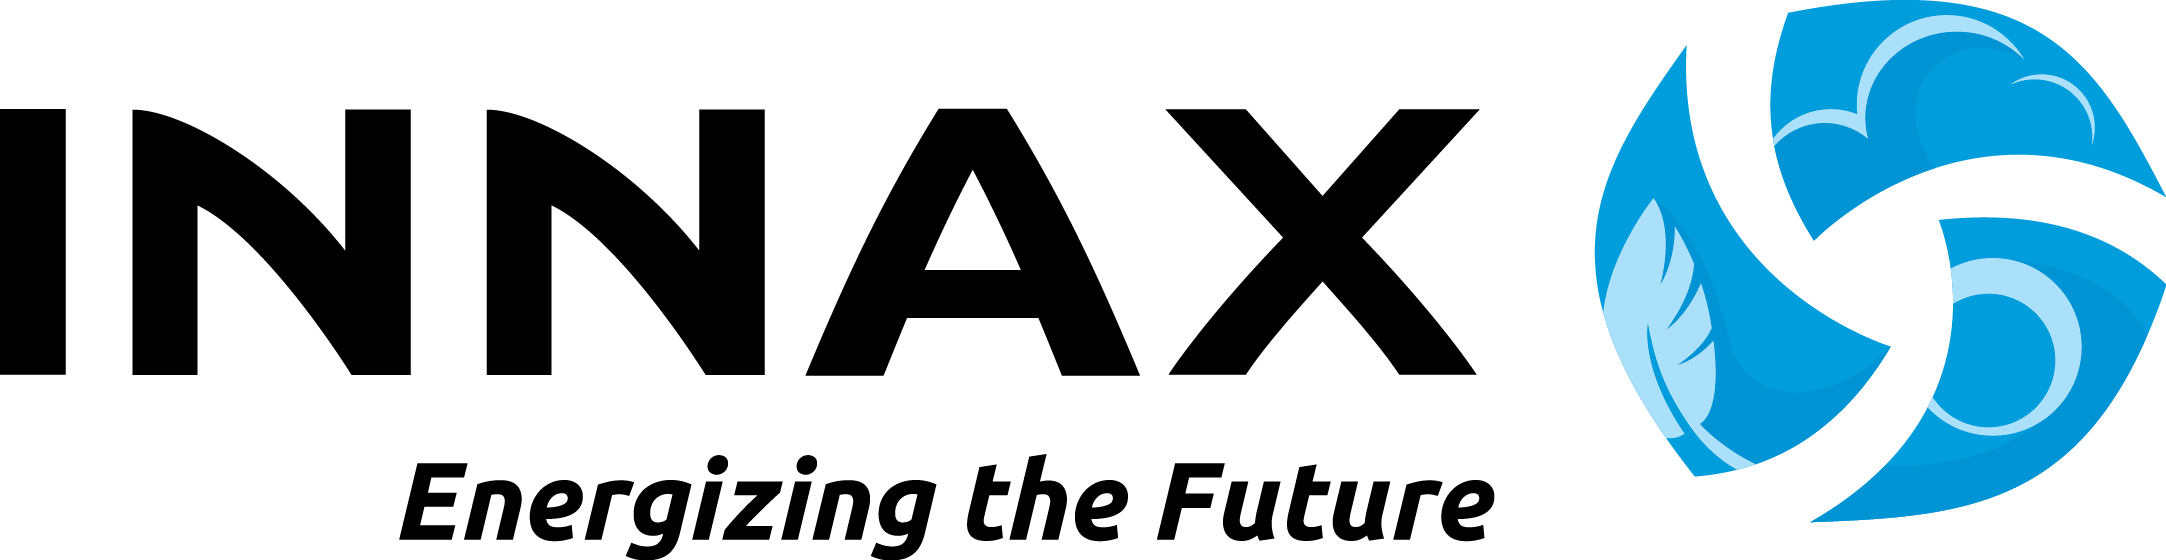 Logo van INNAX. Staat met grote zwarte letters INNAX met daaronder de tekst; Energizing the future. Rechts staat een soort blauwe bol die in drie stukken verdeeld is.